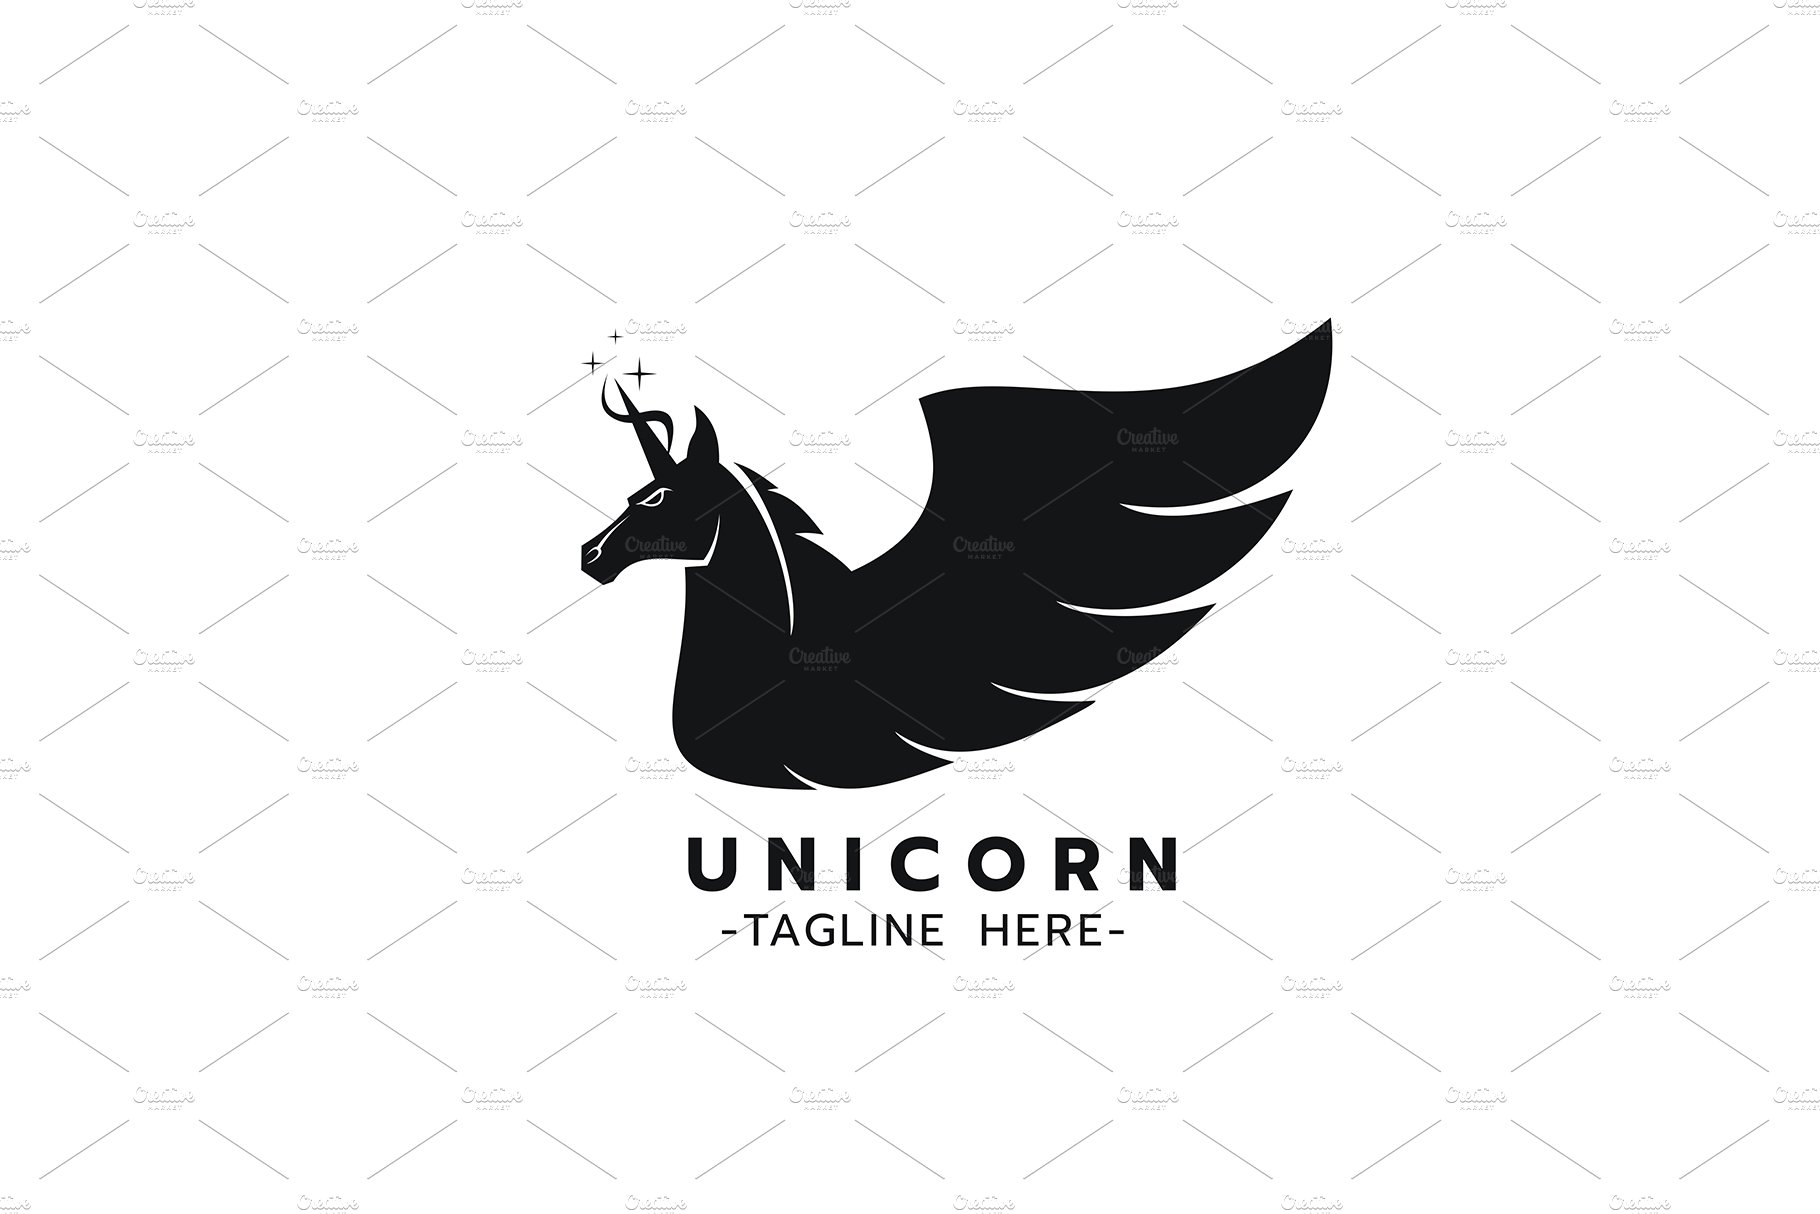 Stylized image of Unicorn logo preview image.